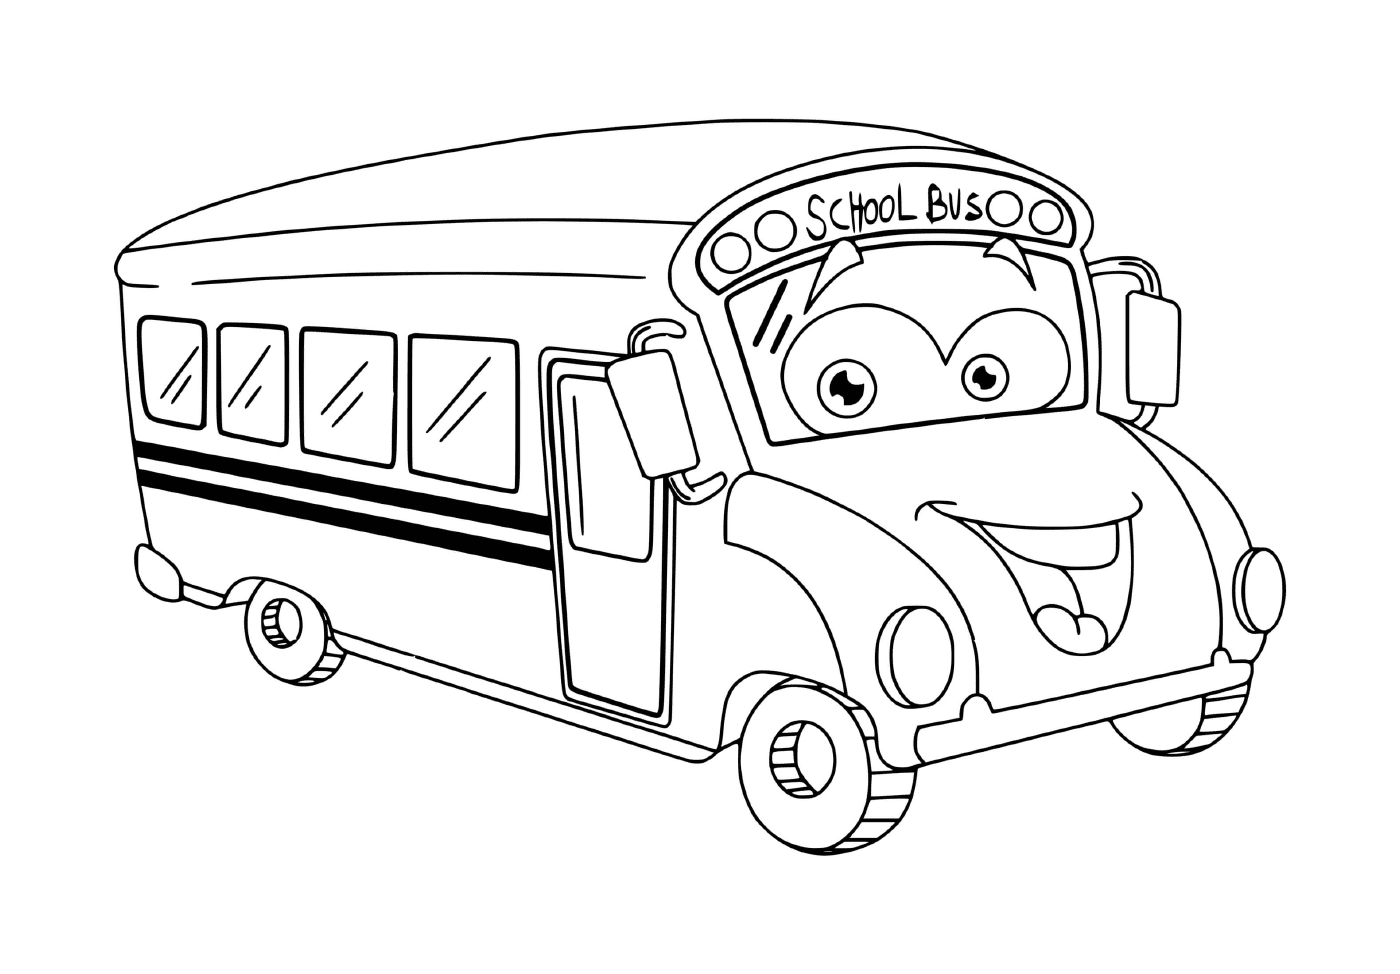   Un autobus scolaire pour les enfants 